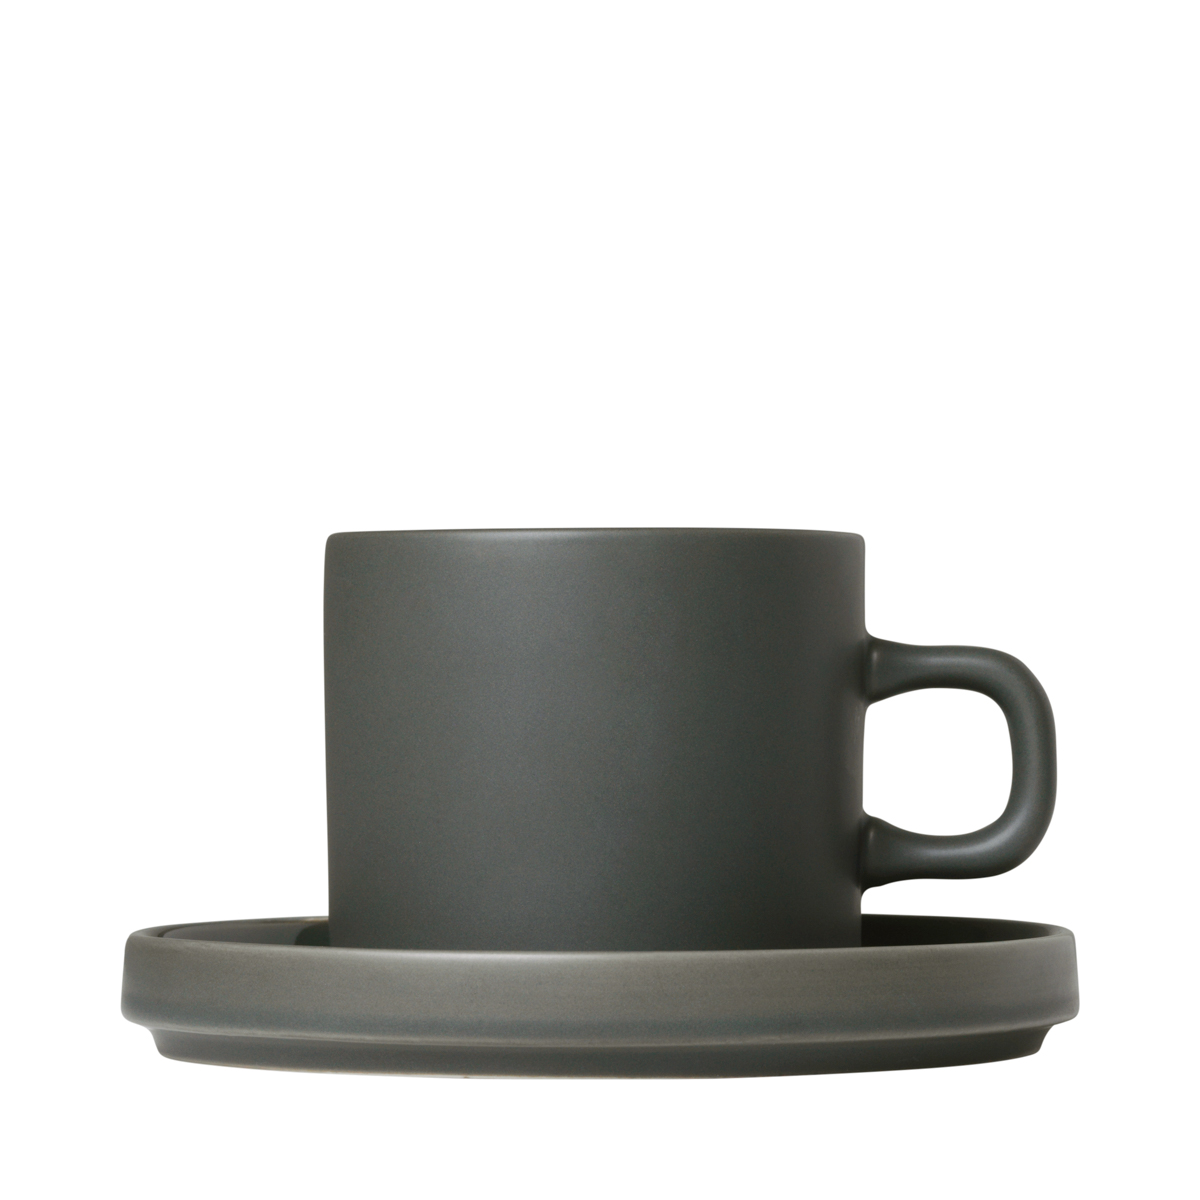 Set 2 Kaffeetassen -PILAR- Agave Green, 200 ml, Ø 8 cm, Ø 14,5 cm. Material: Keramik. Von Blomus.